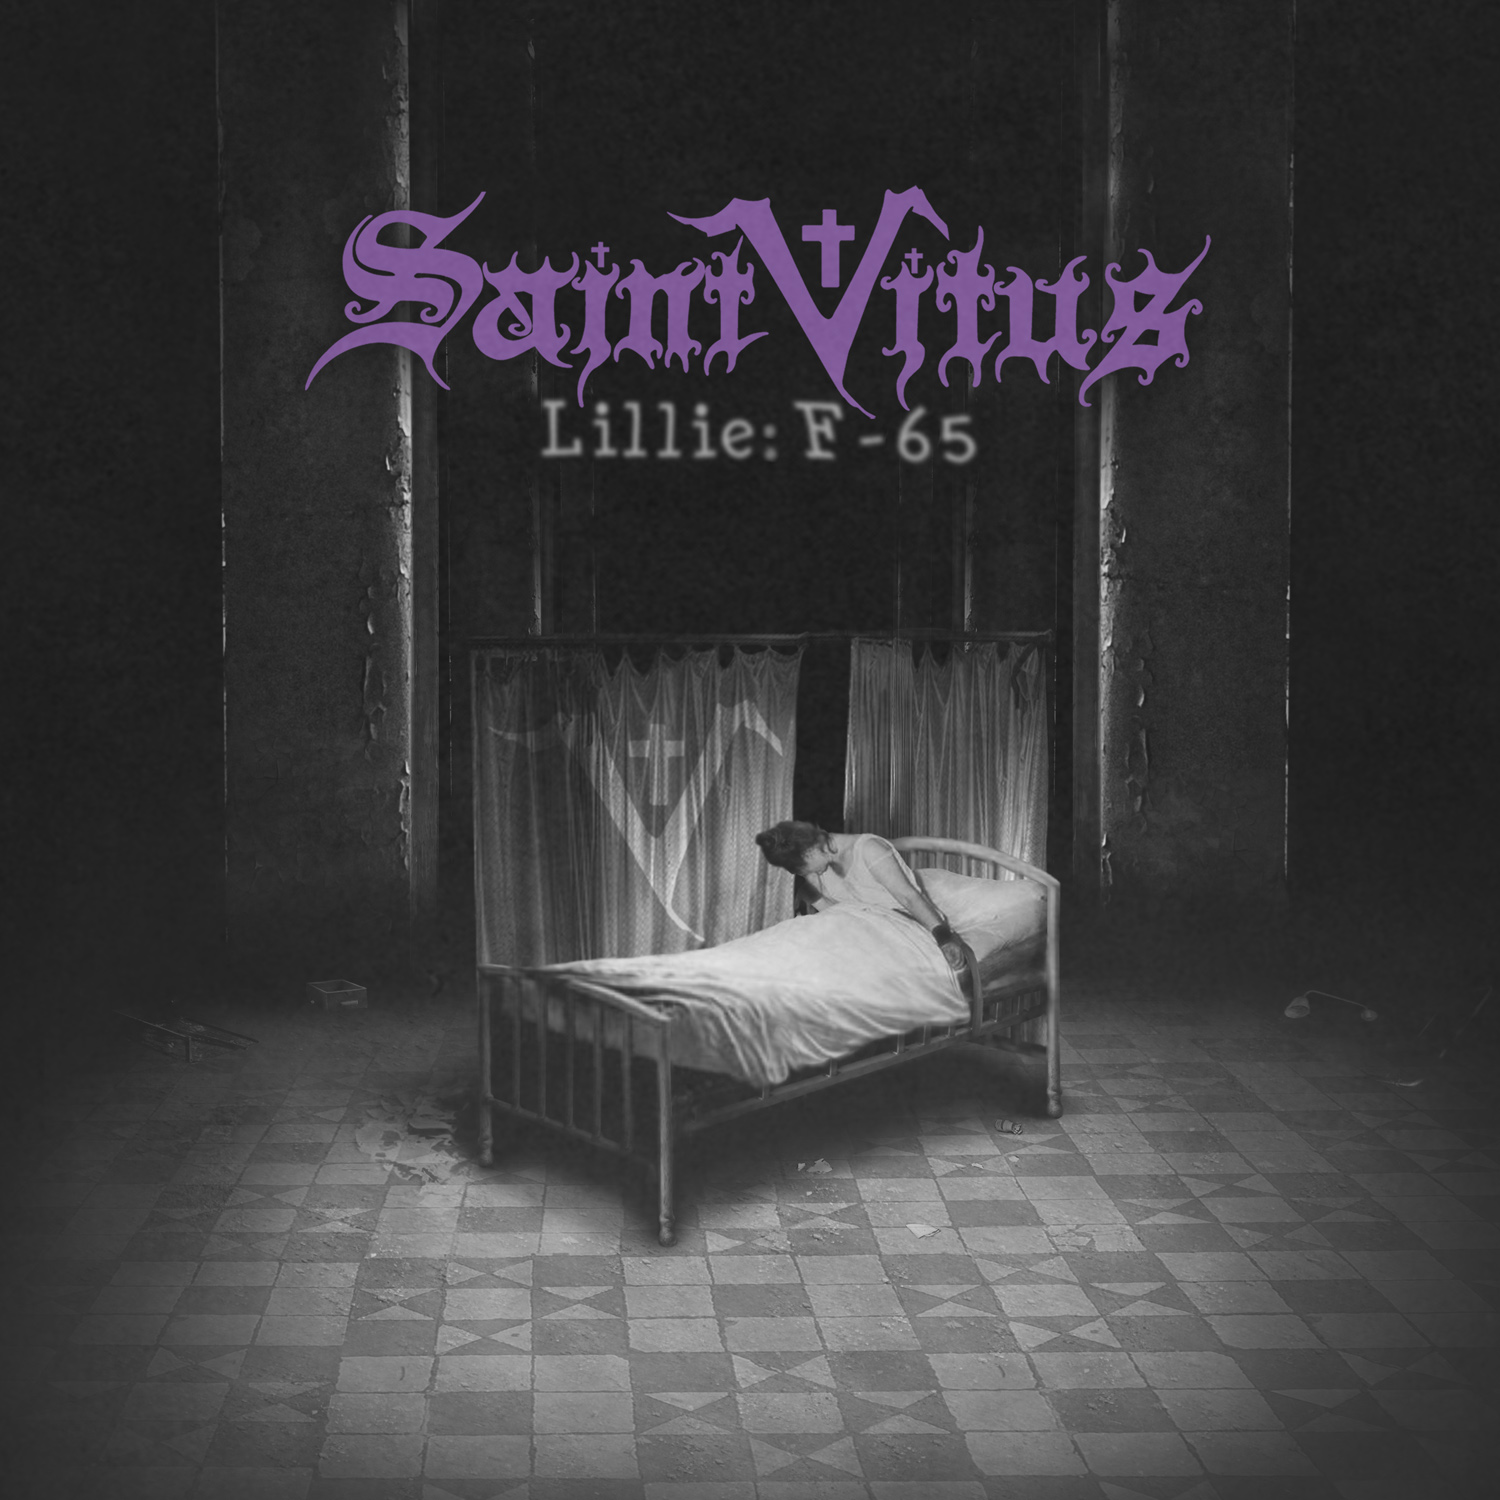 Lillie : F-65 – Saint Vitus